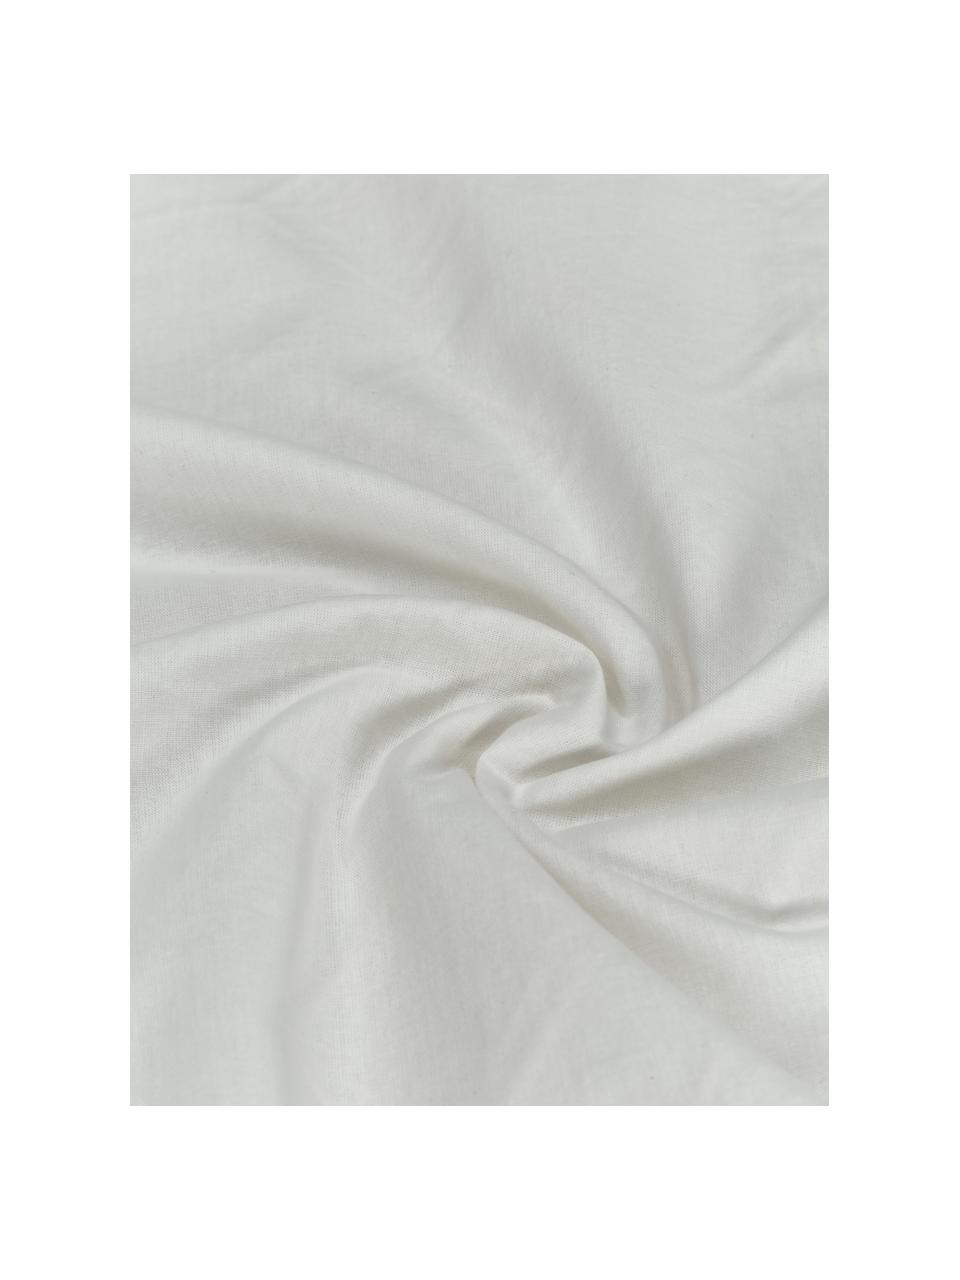 Funda de almohada bordada de algodón Elaine, 100% algodón

Densidad de hilo 140 TC, calidad estándar

El algodón da una sensación agradable y suave en la piel, absorbe bien la humedad y es adecuado para personas alérgicas, Blanco estampado, An 45 x L 110 cm